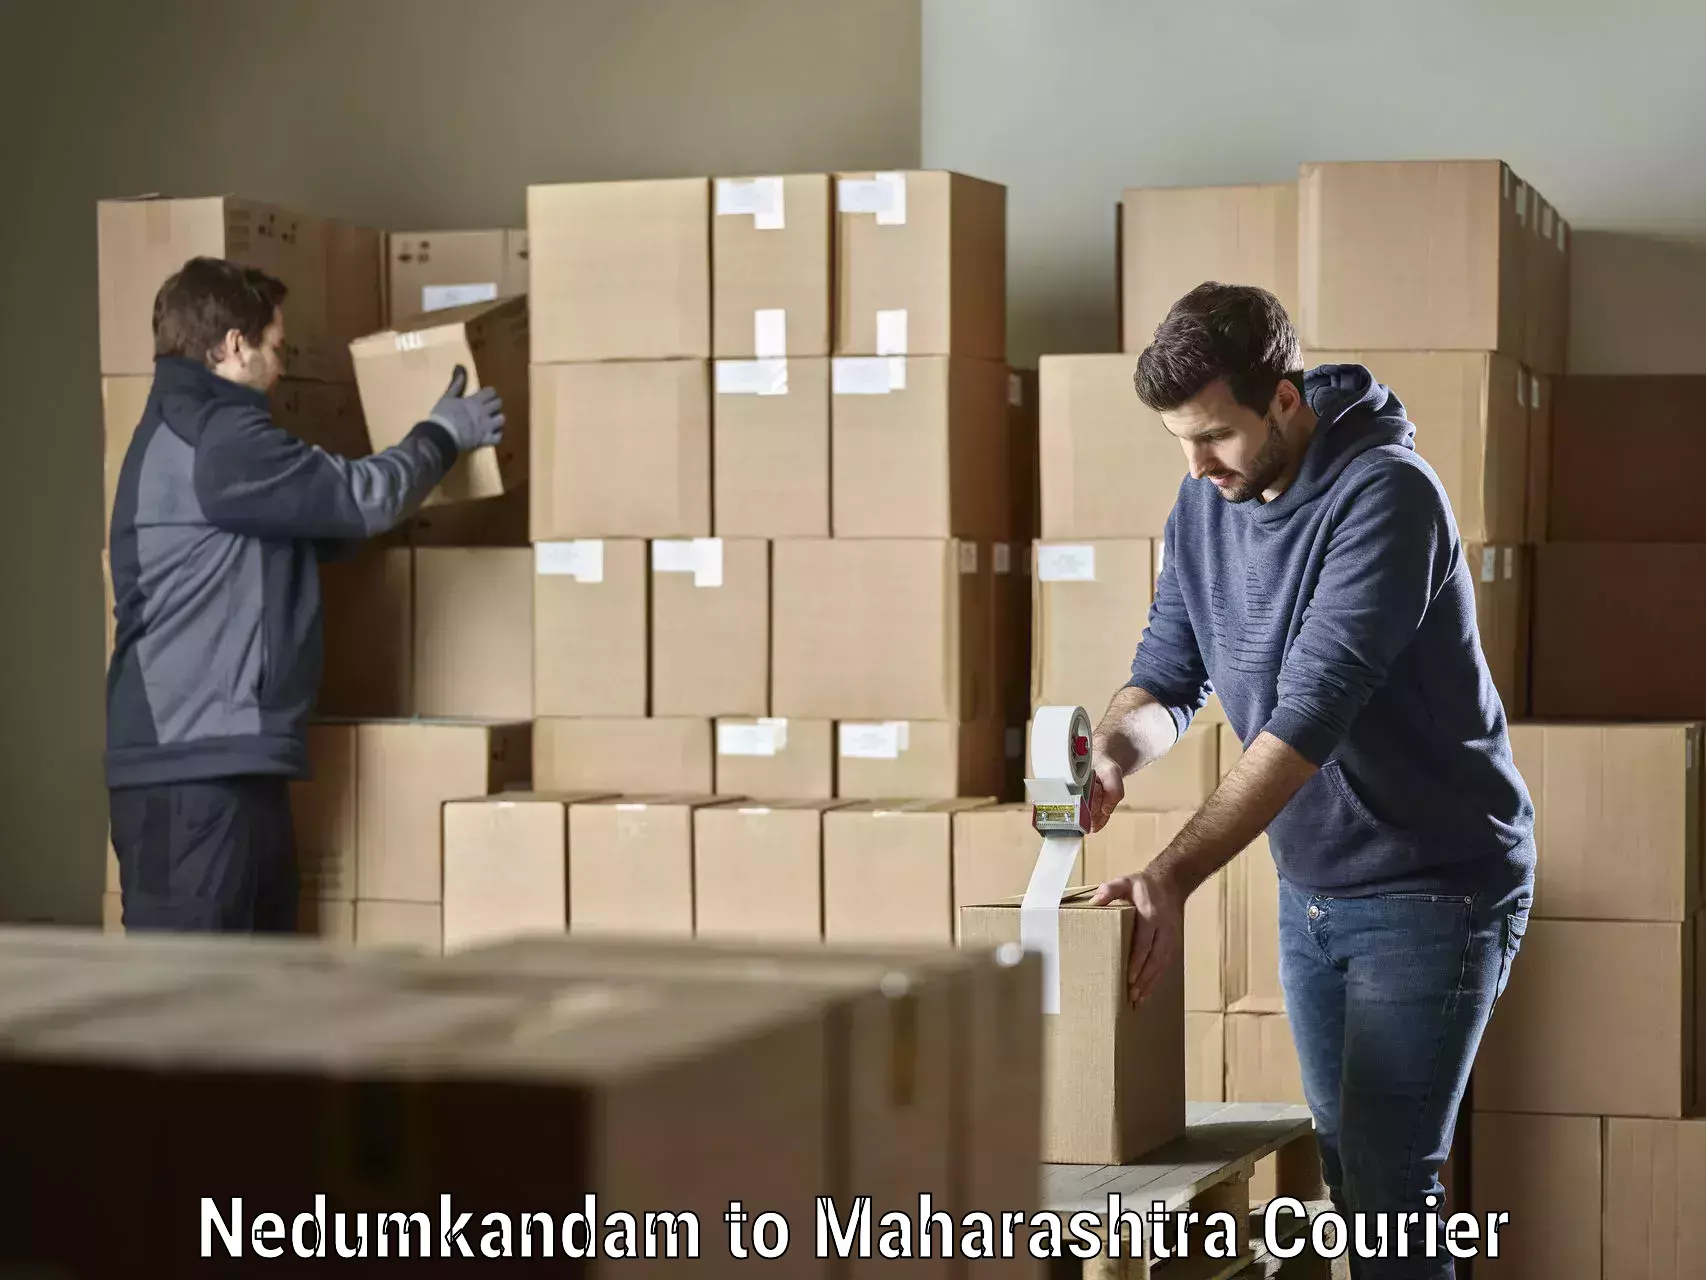 Professional courier handling Nedumkandam to Mumbai Port